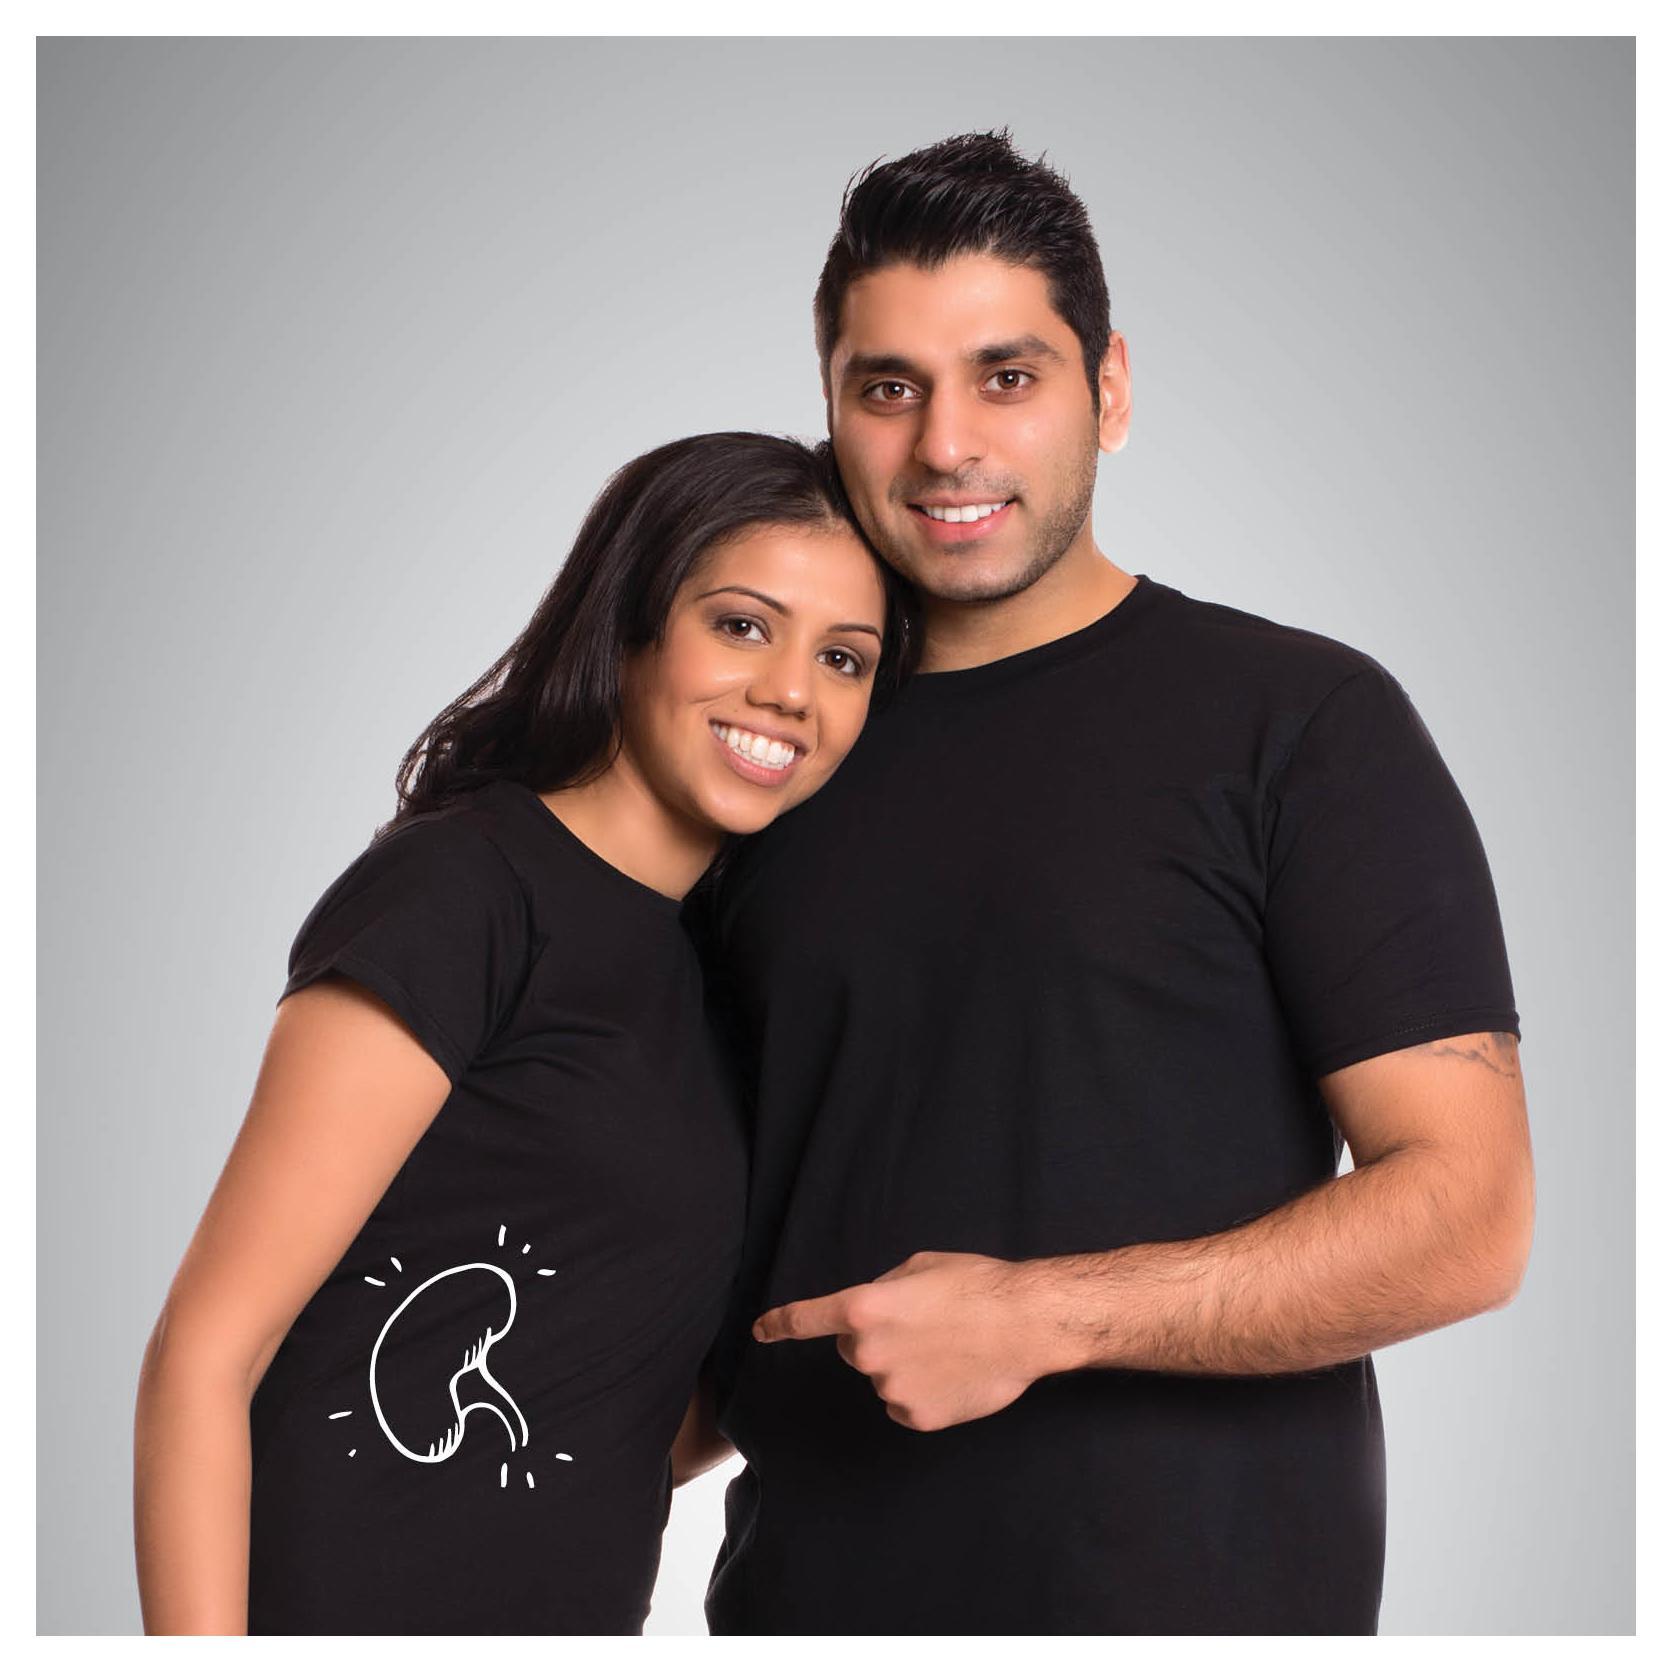 Gurjit (gauche) et son mari, Shak, donneur de rein (droite). Photo publiée avec la permission de B.C. Transplant